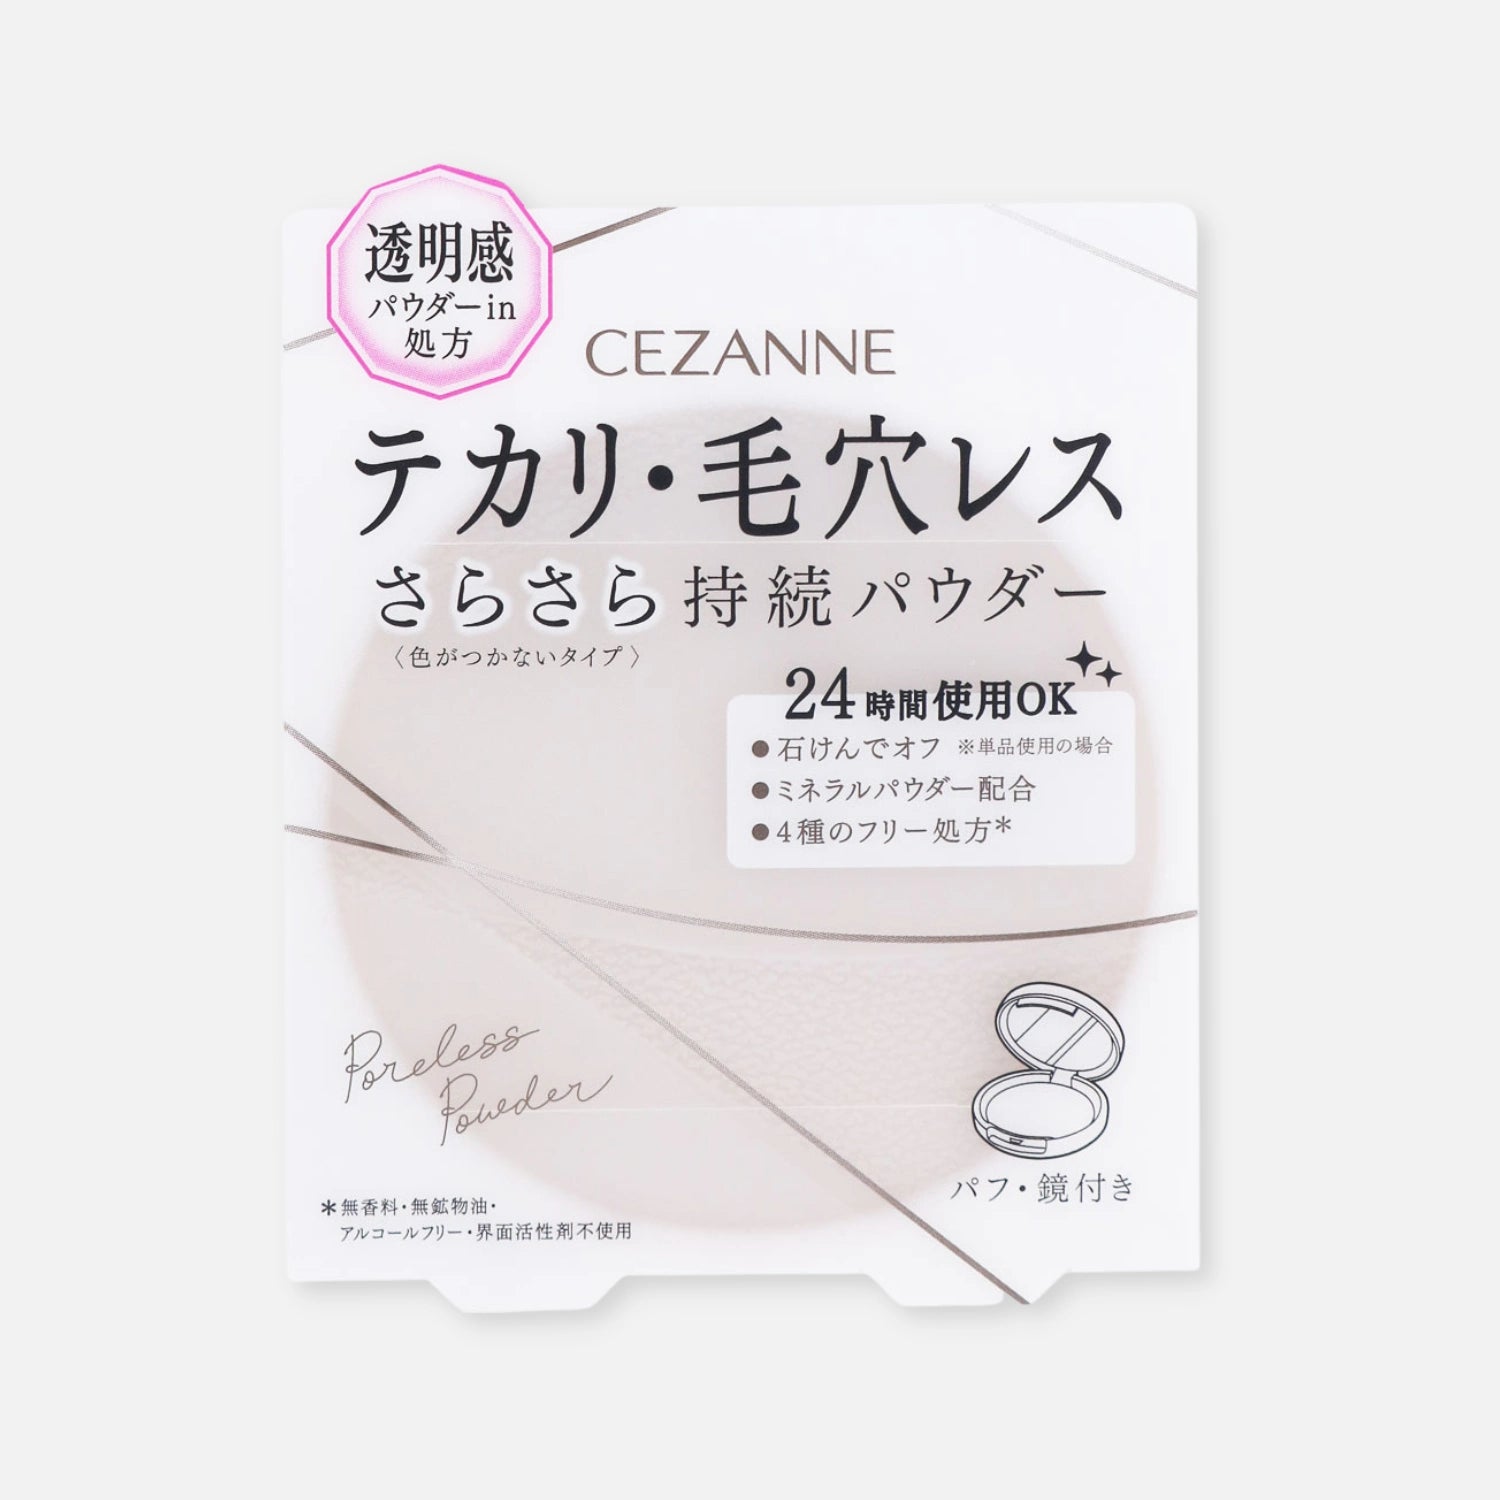 Cezanne Poreless Powder Clear 8g - Buy Me Japan